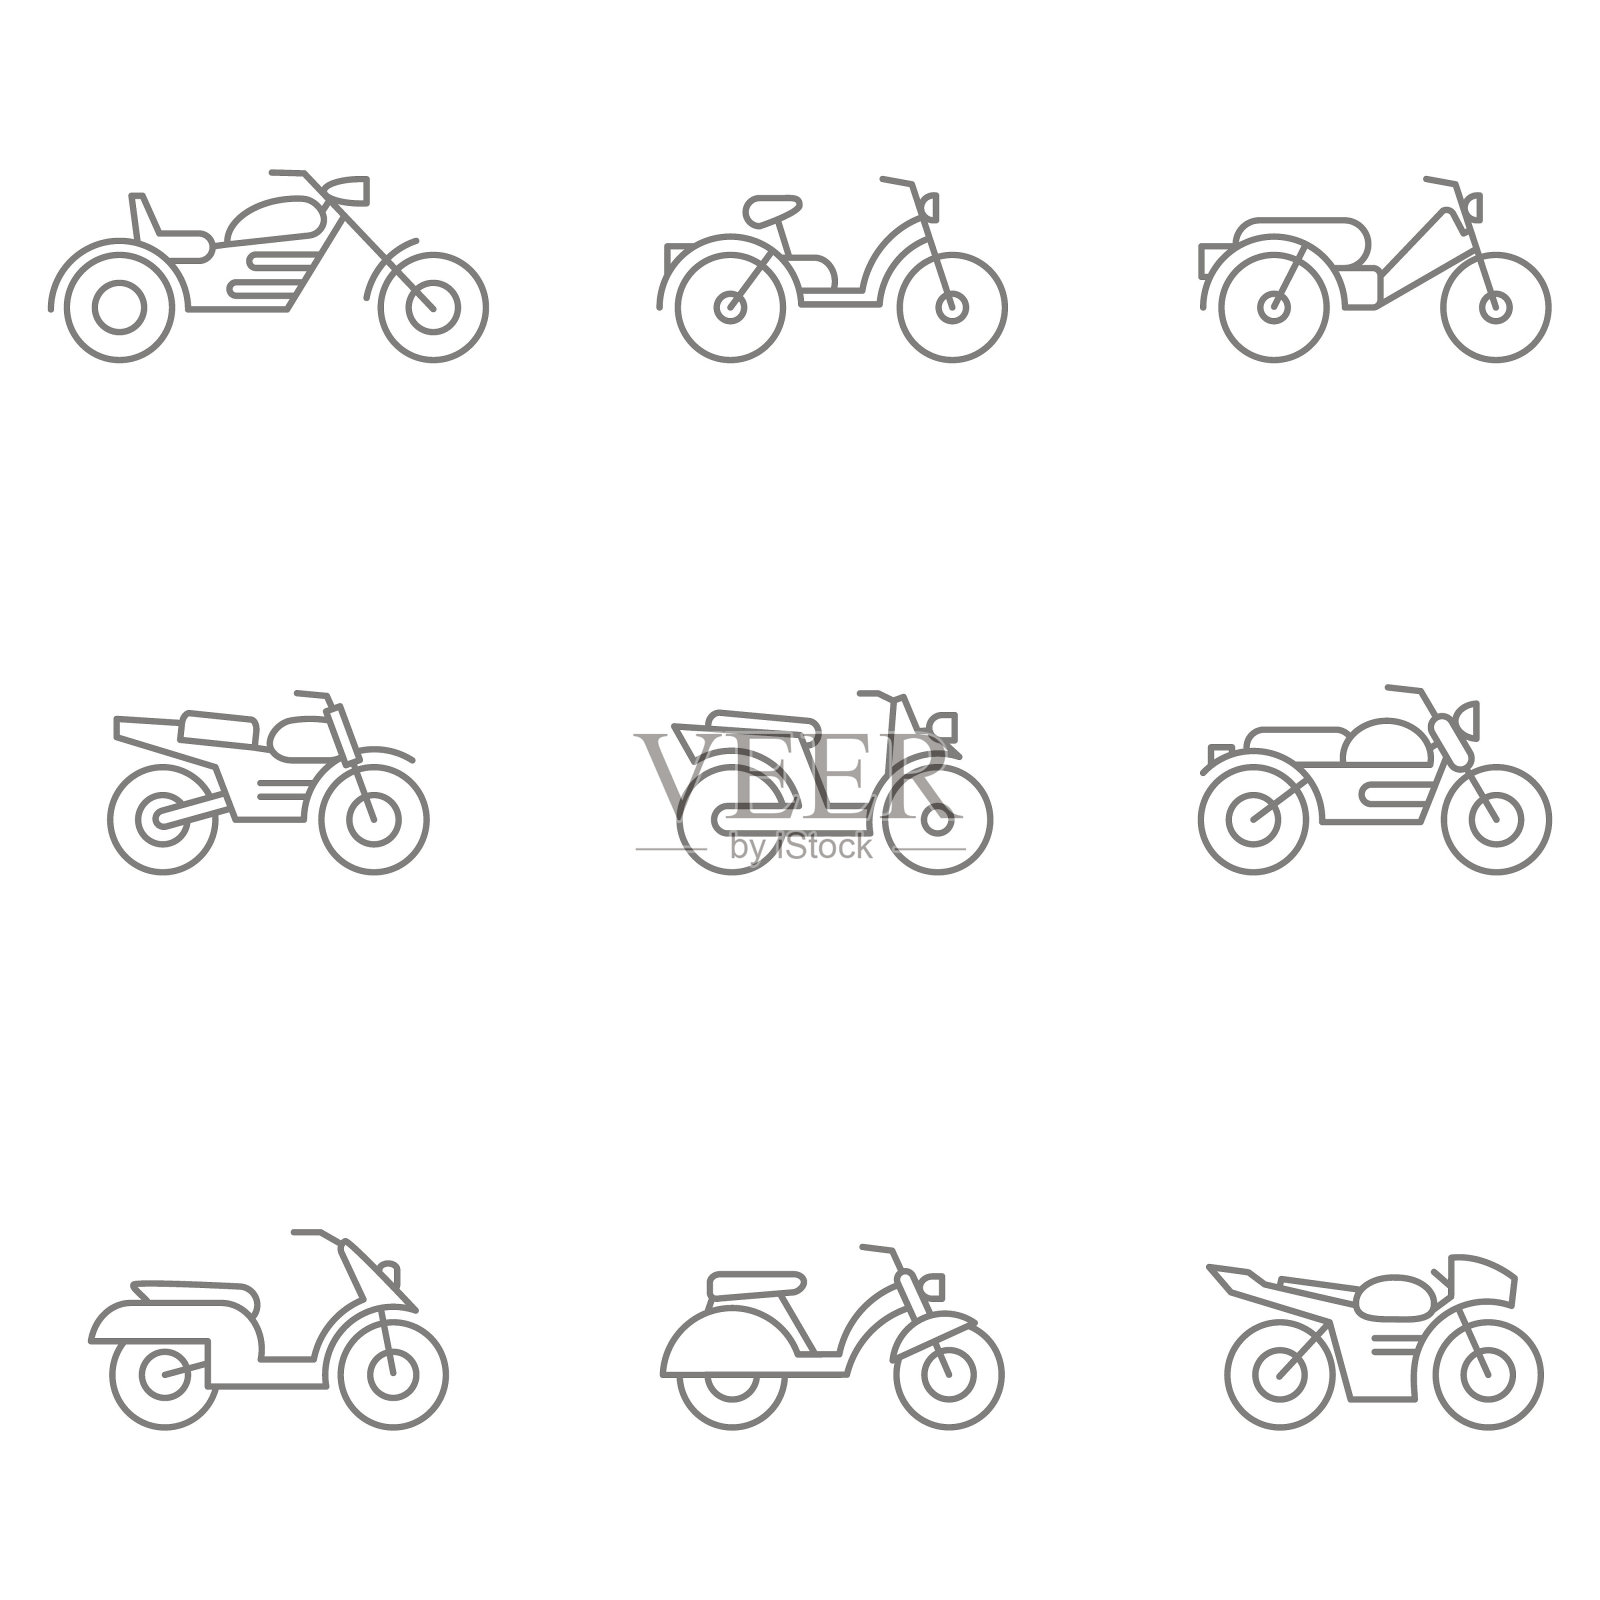 黑白矢量集不同类型的摩托车和轻便摩托车插画图片素材